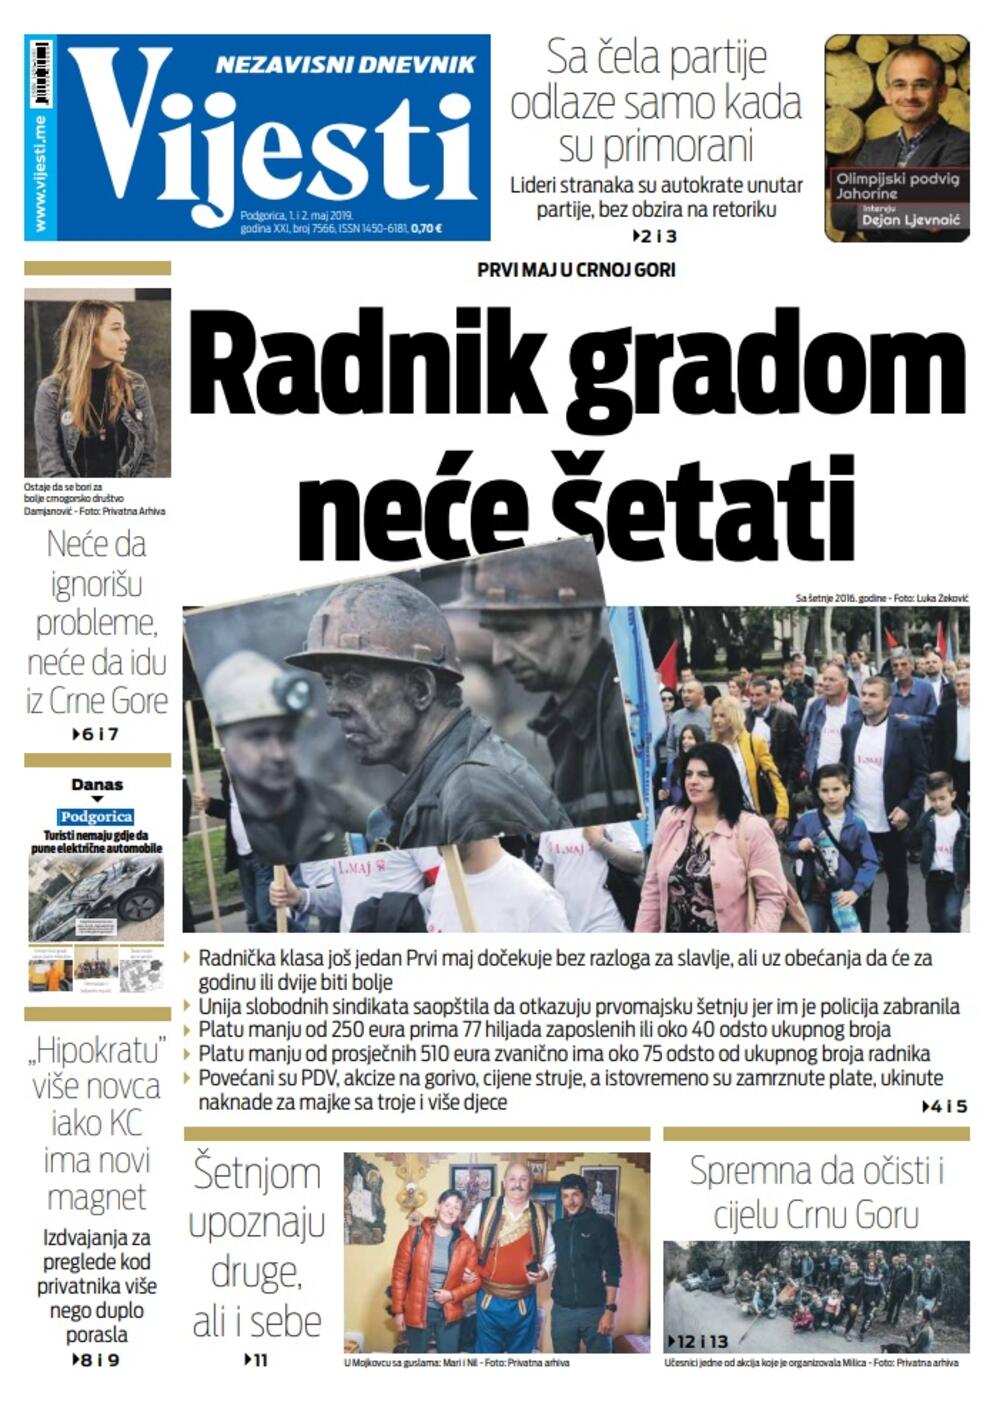 Naslovna strana "Vijesti" za 1. i 2. maj